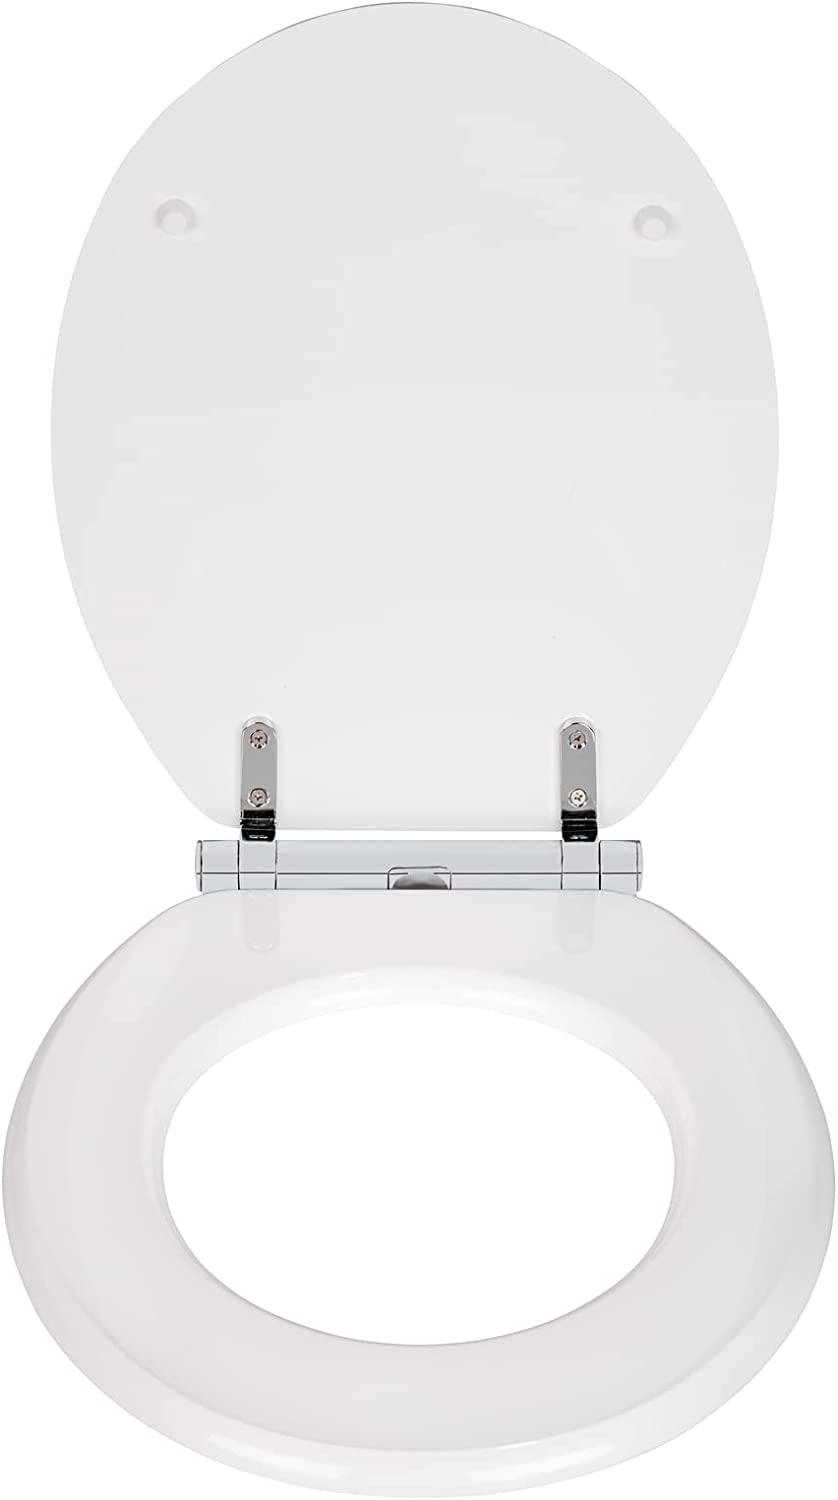 WC-Sitz Morra, Toilettensitz mit durchgehendem Scharnier und Absenkautomatik aus mehrfach lackiertem FSC®-zertifiziertem MDF, WC-Deckel mit Fix-Clip Hygienebefestigung, 35 x 42 cm, Weiß glänzend